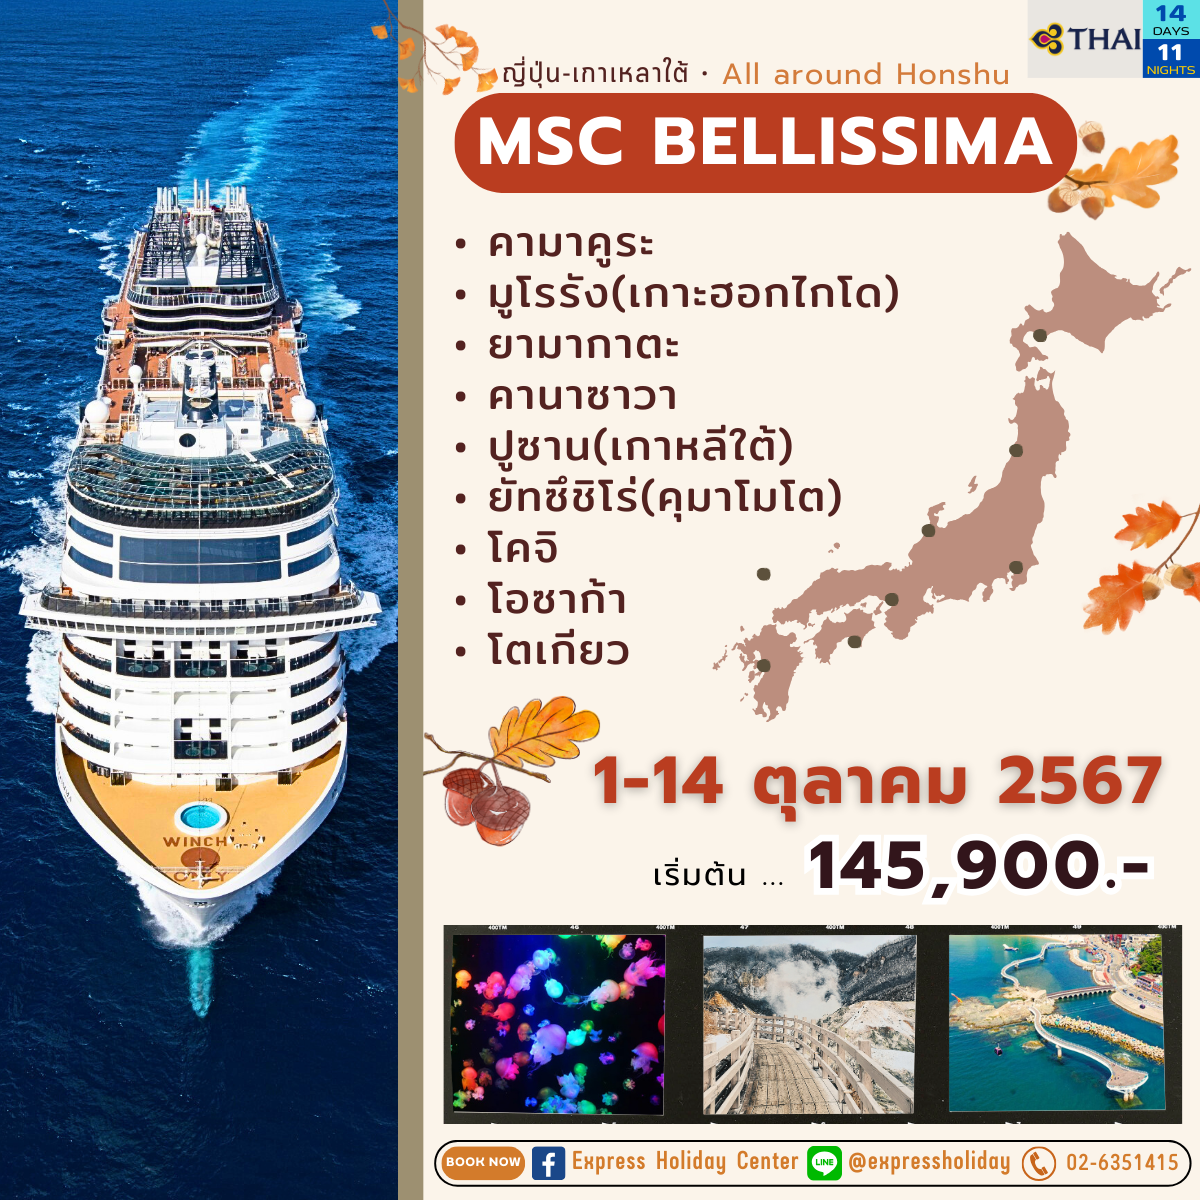 ทัวร์เรือสำราญ MSC Bellissima ญี่ปุ่น-เกาหลีใต้ เดือนตุลาคม